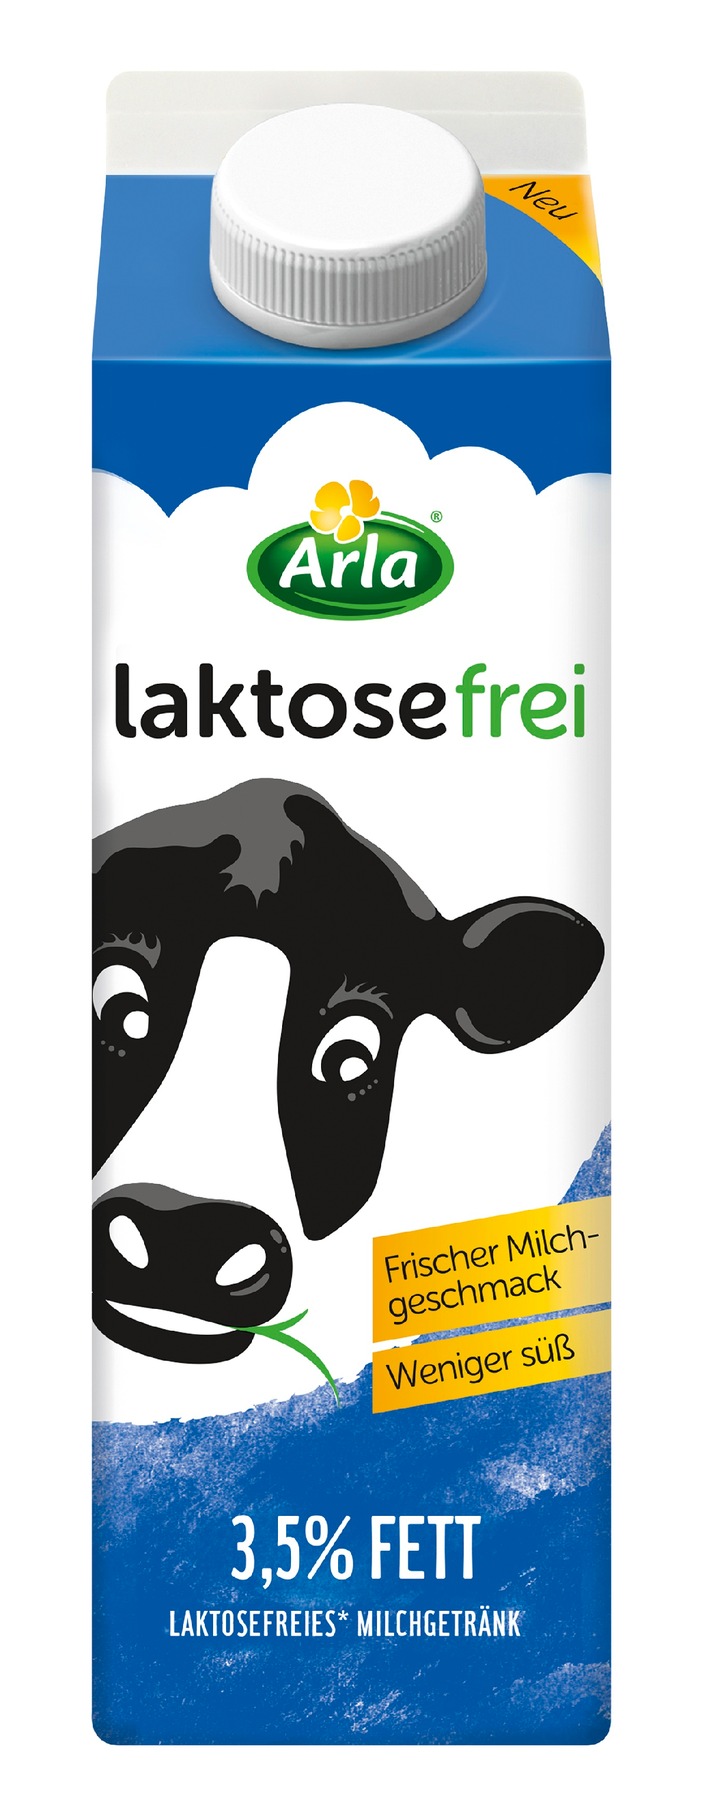 Der neue Star unter laktosefreier Frischmilch: Arla® laktosefrei - die Erste, die lecker frisch und nicht so süß schmeckt